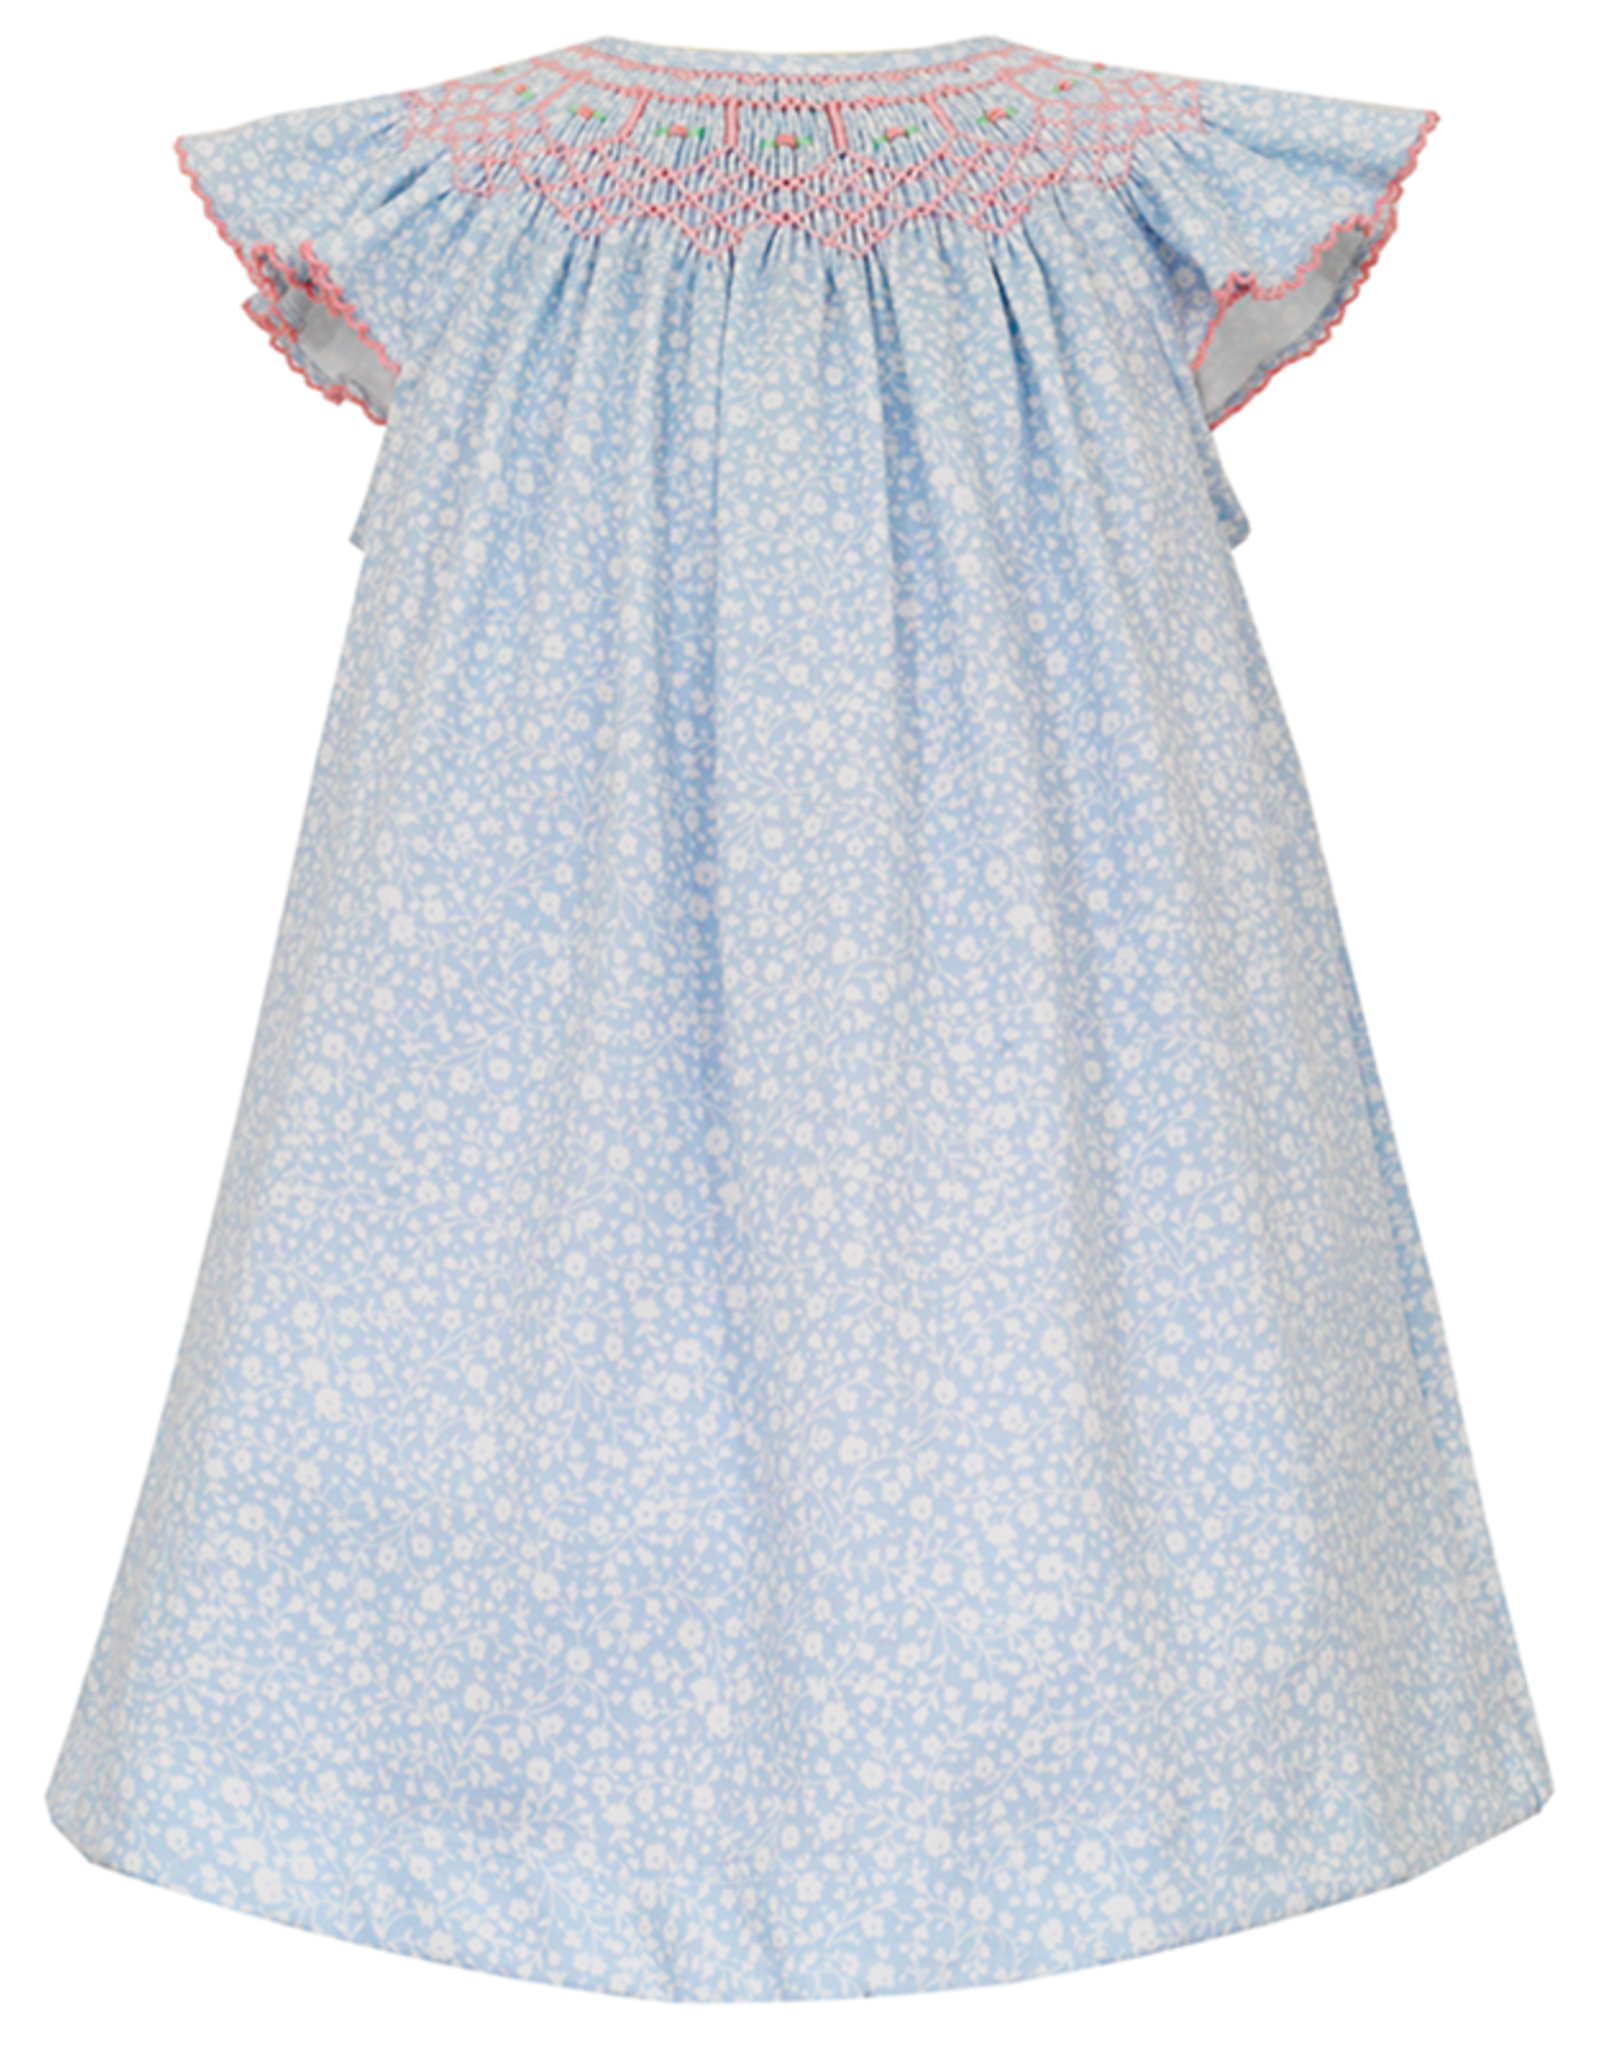 Petit Bebe 403B Emma Blue Floral Smocked Bishop Dress